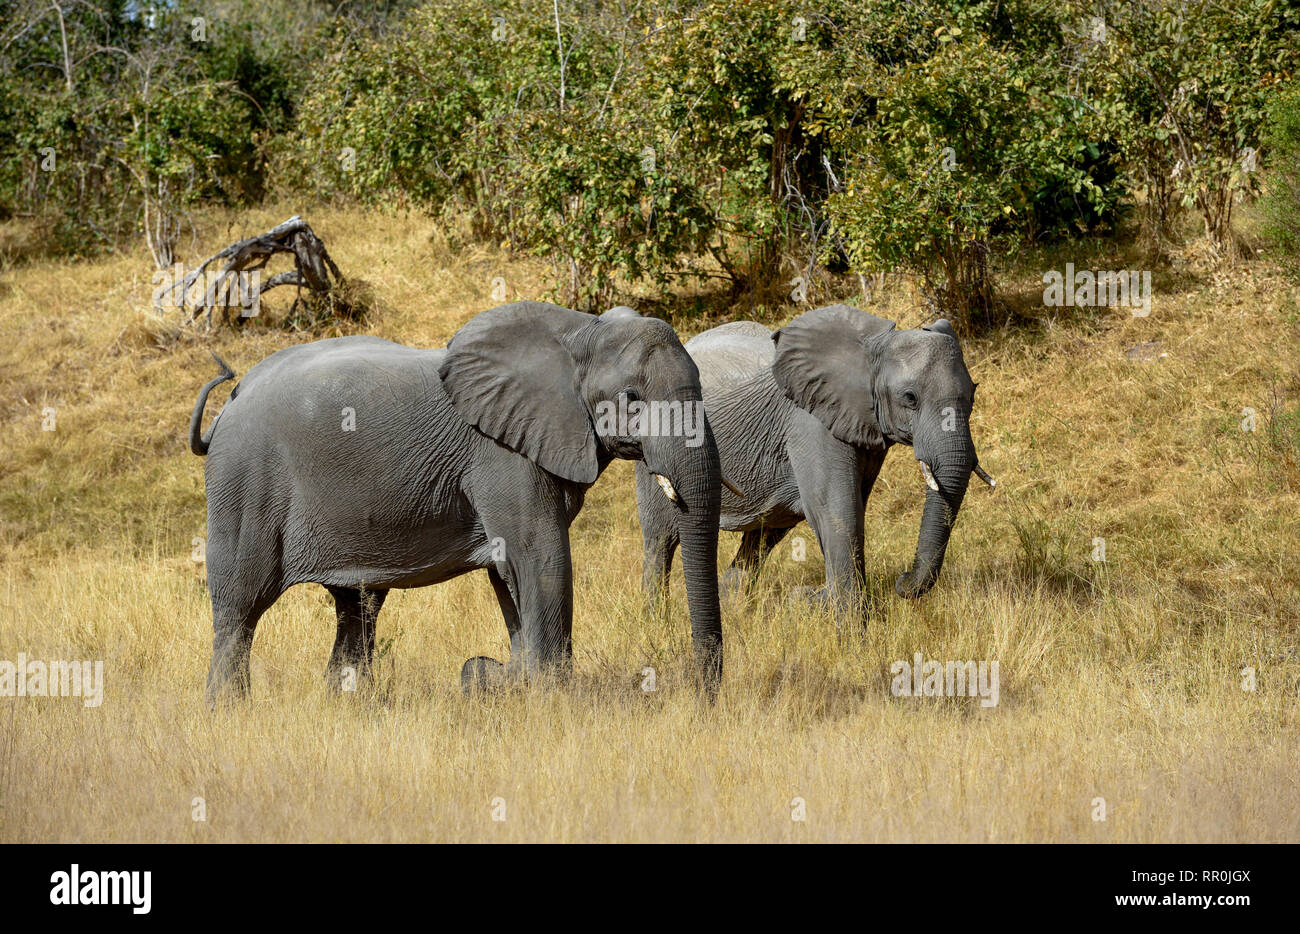 zoology, mammal (mammalia), elephant (Loxodonta africana), Savuti, Chobe National Park, Botswana, Additional-Rights-Clearance-Info-Not-Available Stock Photo